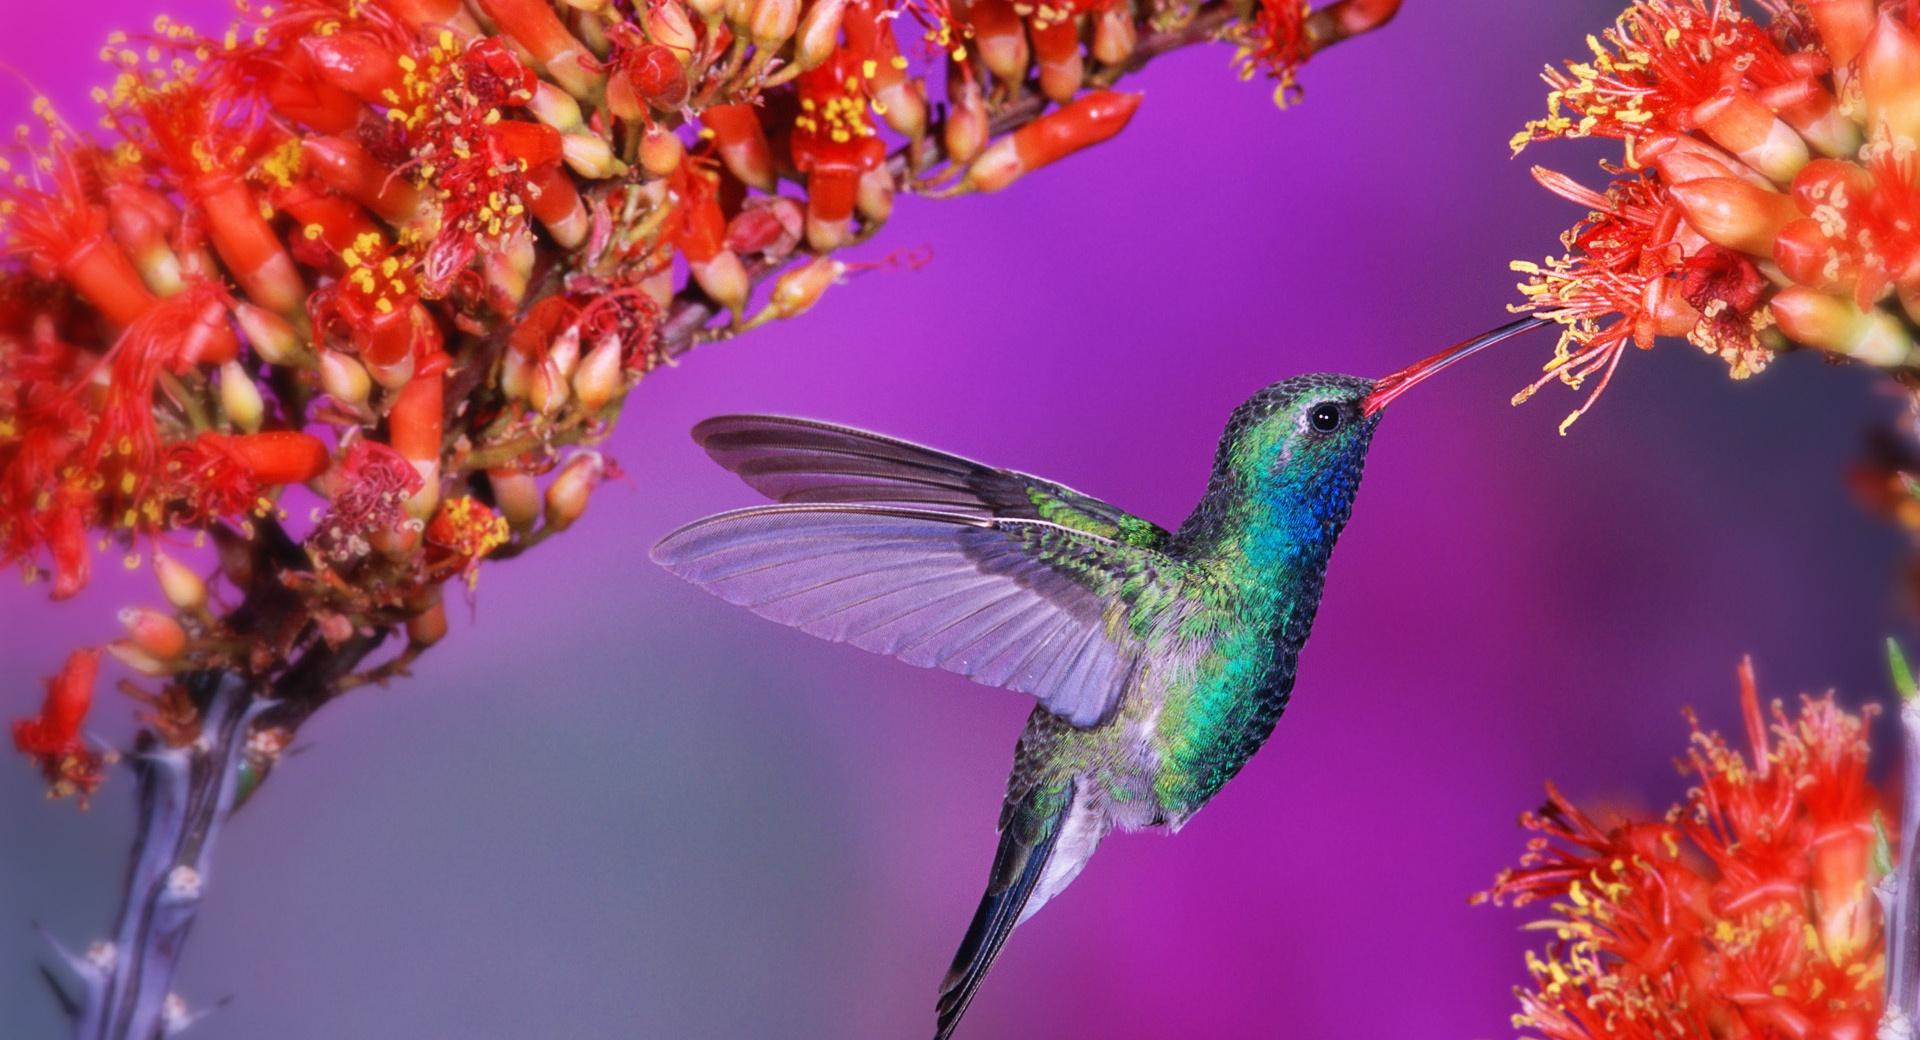 Beautiful Hummingbird at 1024 x 1024 iPad size wallpapers HD quality